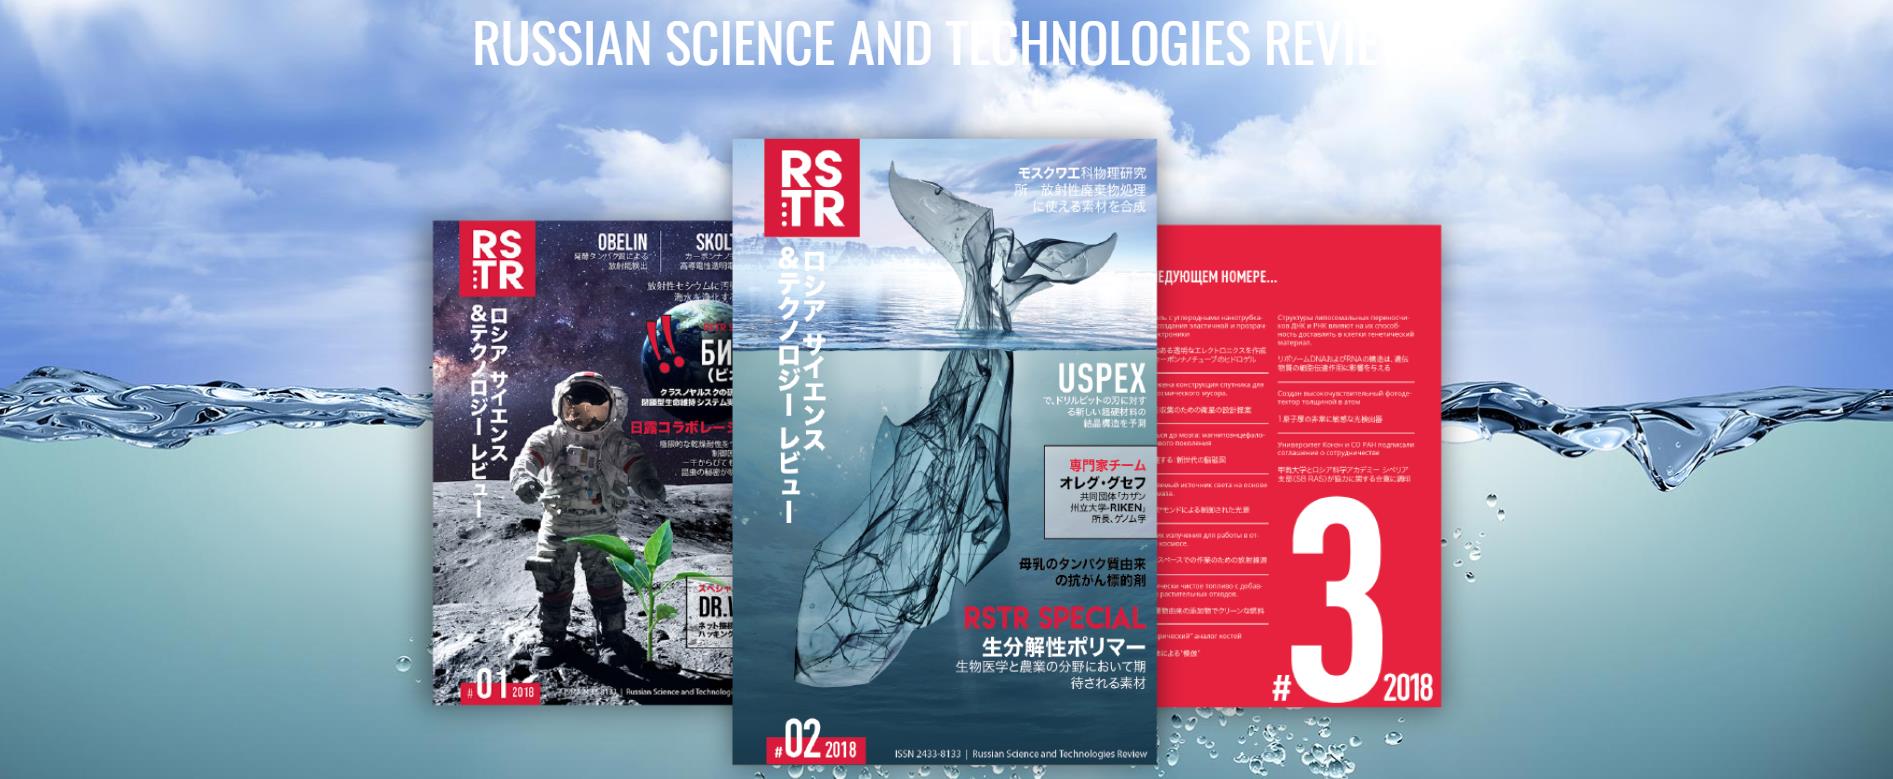 В Японии появился журнал о современных российских научных разработках и технологиях [1]